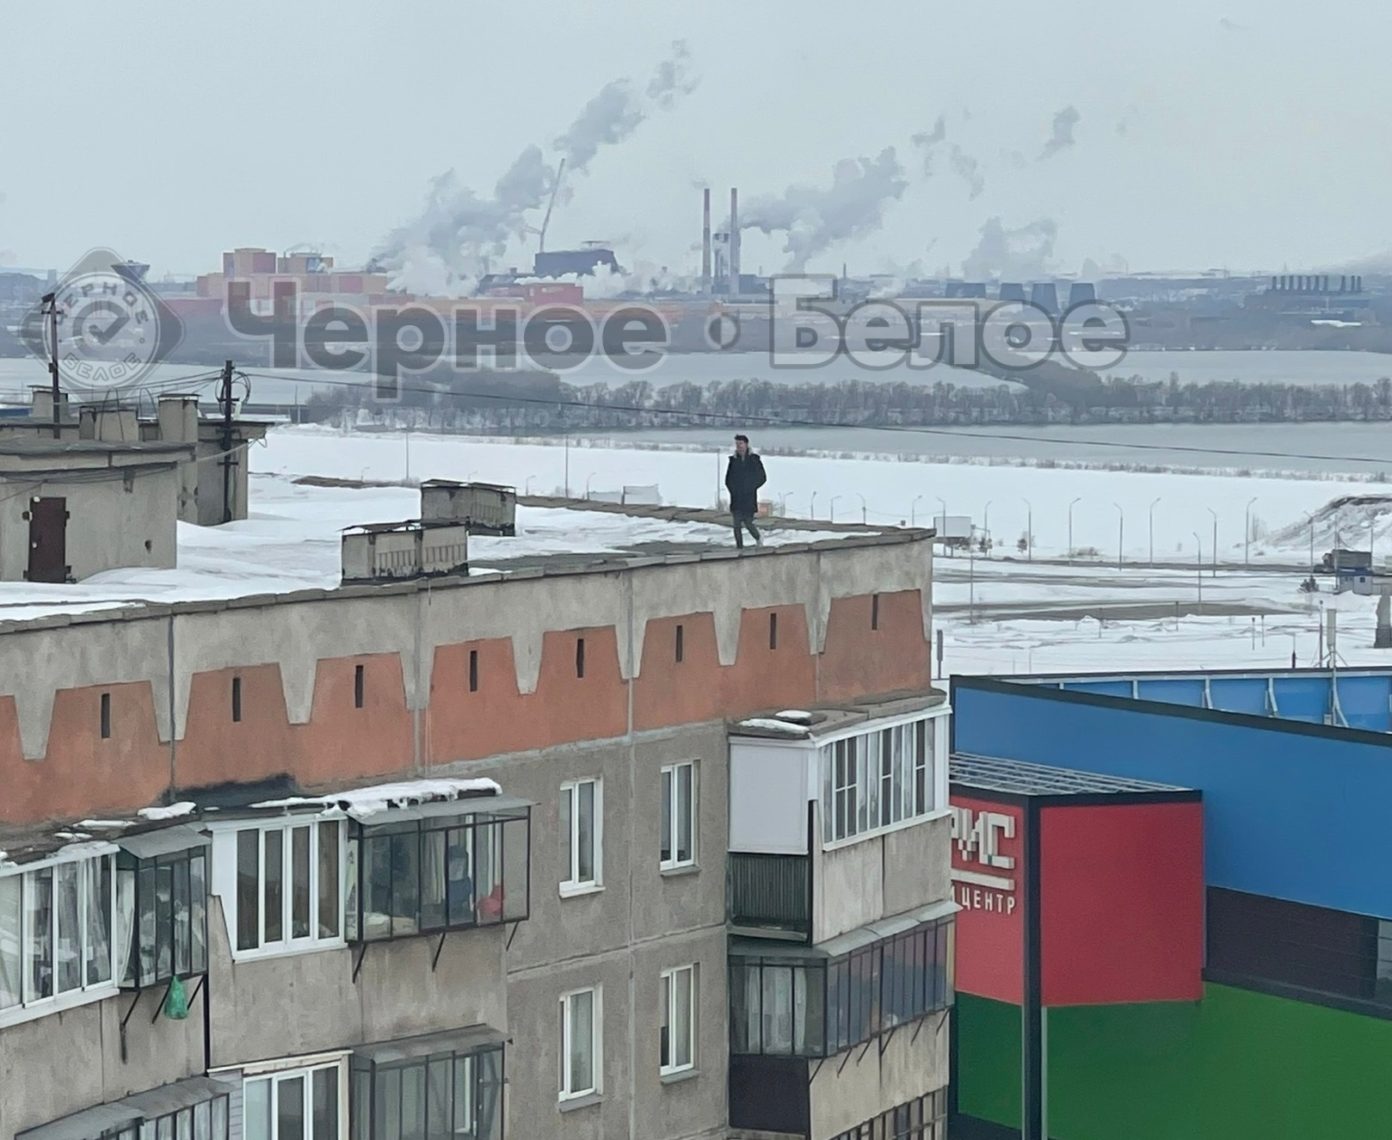 Рискуют сорваться. По самому краю крыши высотного здания в центре Магнитогорска гуляют подростки